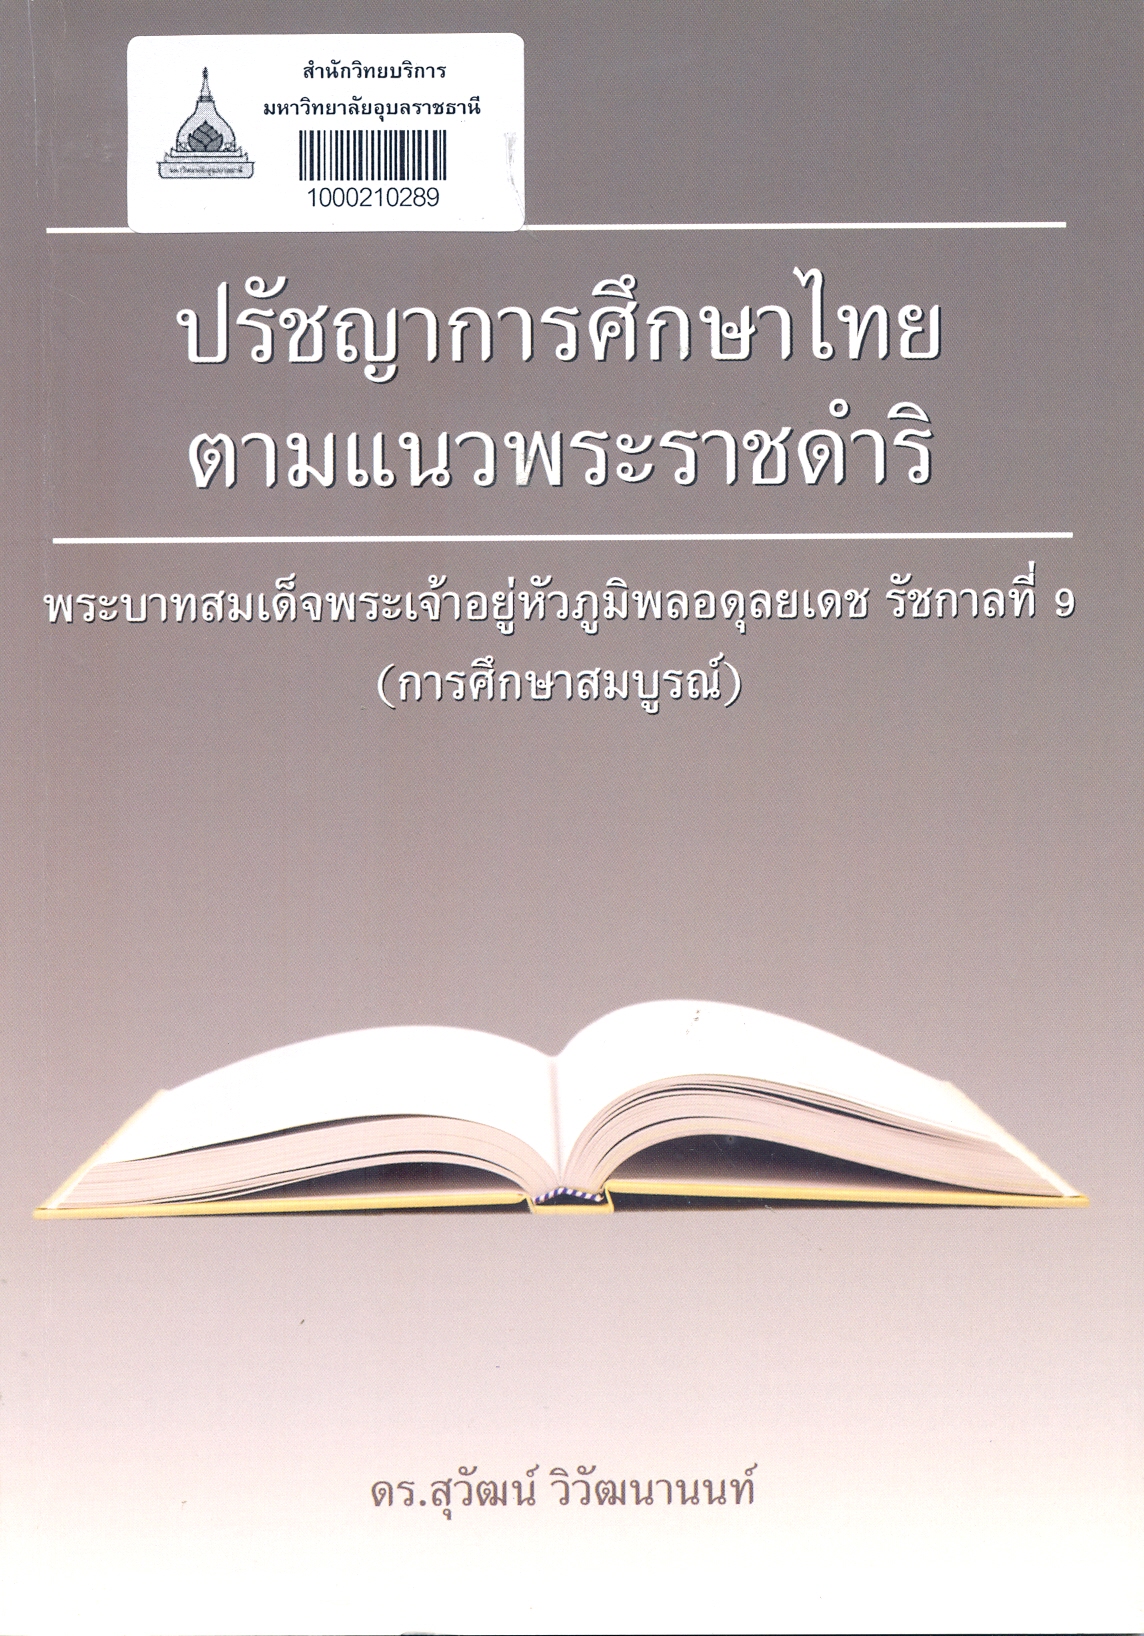 ปรัชญาการศึกษาไทยตามแนวพระราชดำริ พระบาทสมเด็จพระเจ้าอยู่หัวภูมิพลอดุลยเดช รัชกาลที่ 9 (การศึกษาสมบูรณ์)